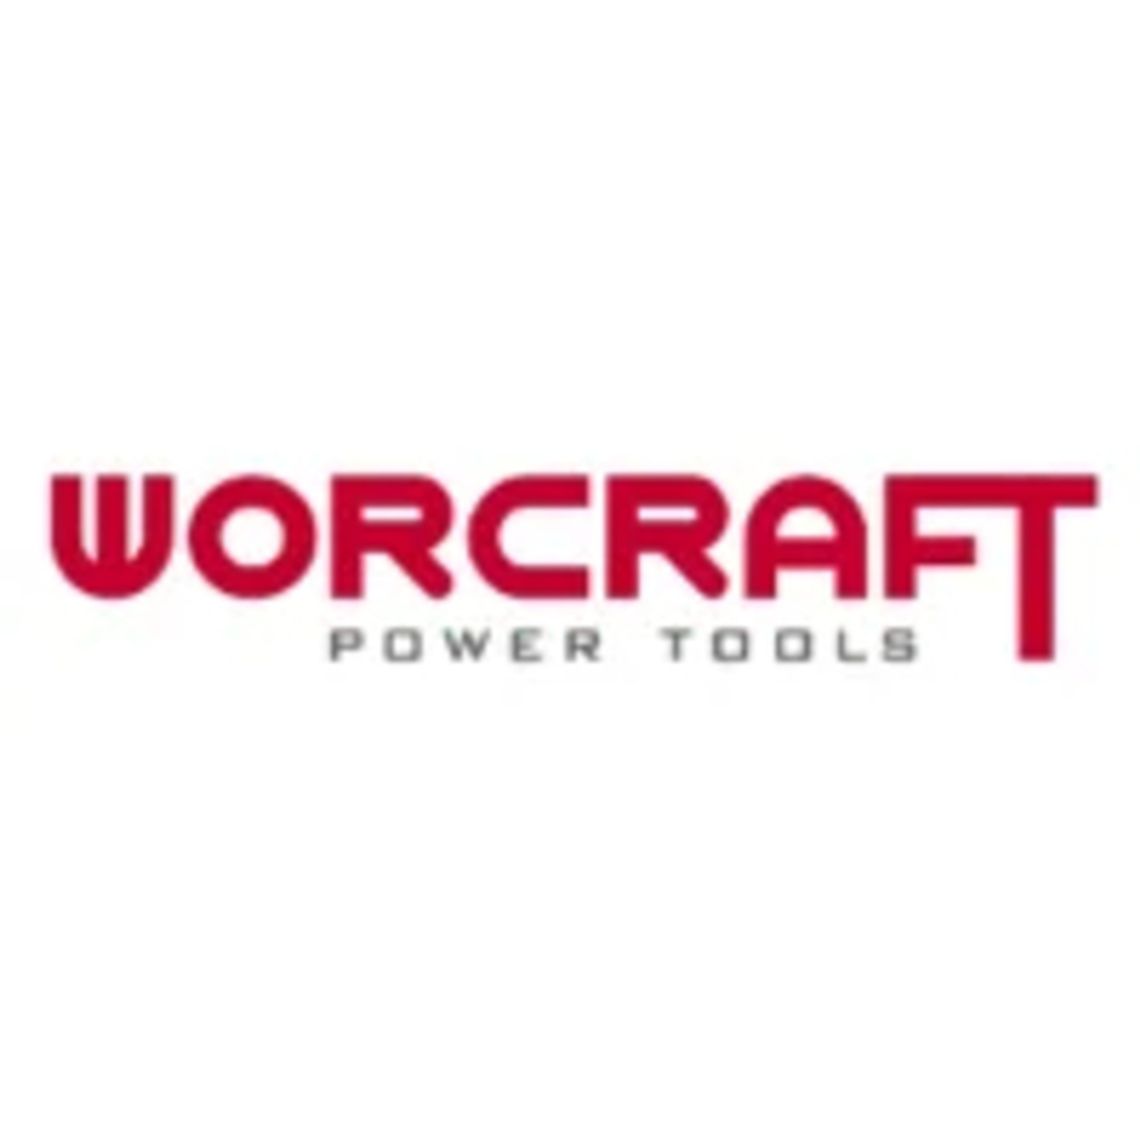 Worcraft.pl - elektronarzędzia na najwyższym poziomie